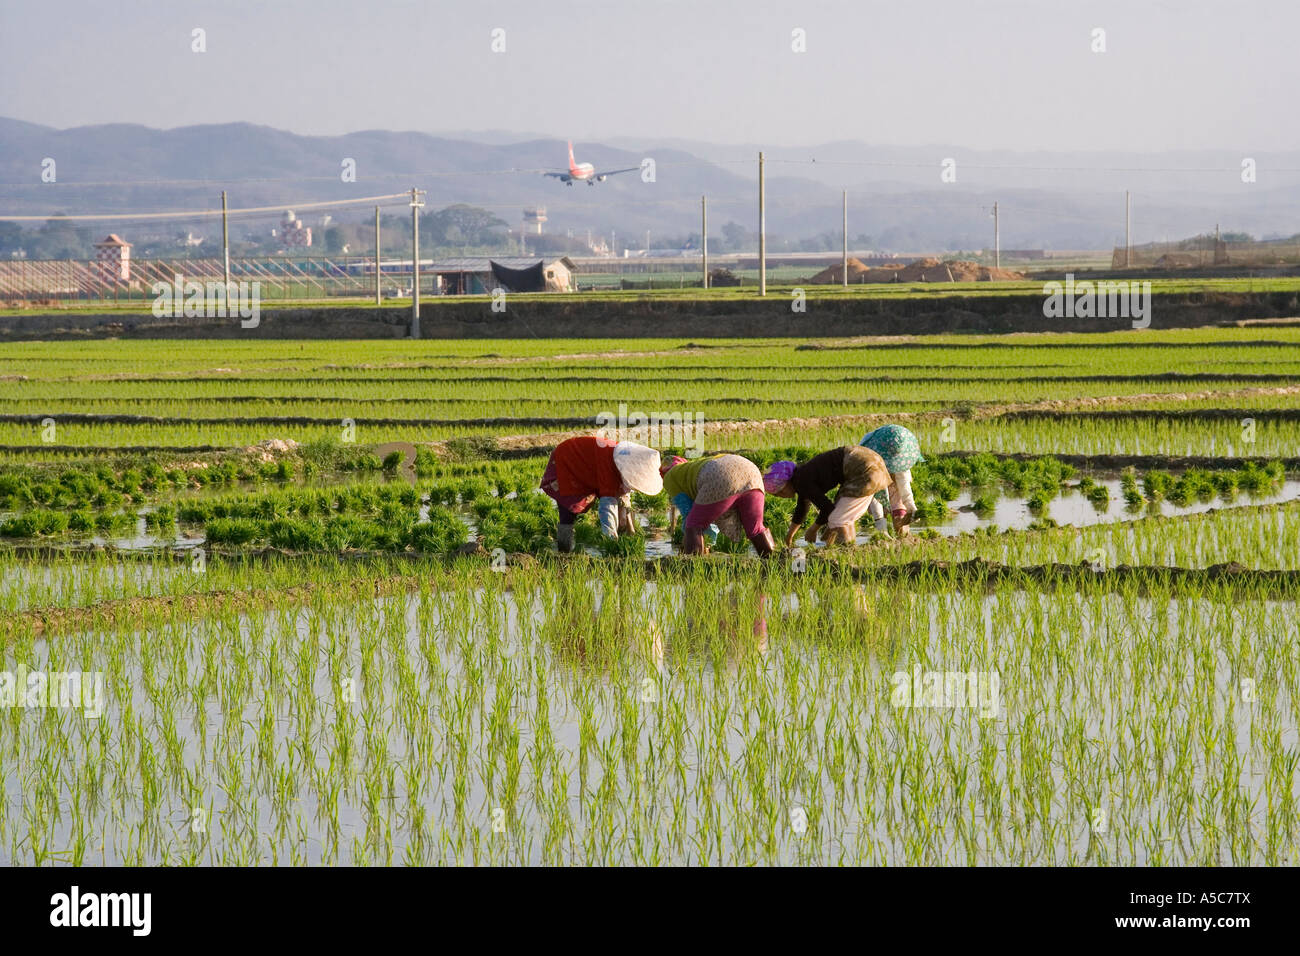 L'atterrissage de l'avion derrière les agriculteurs chinois le repiquage du riz dans les champs Jinghong, Chine Banque D'Images